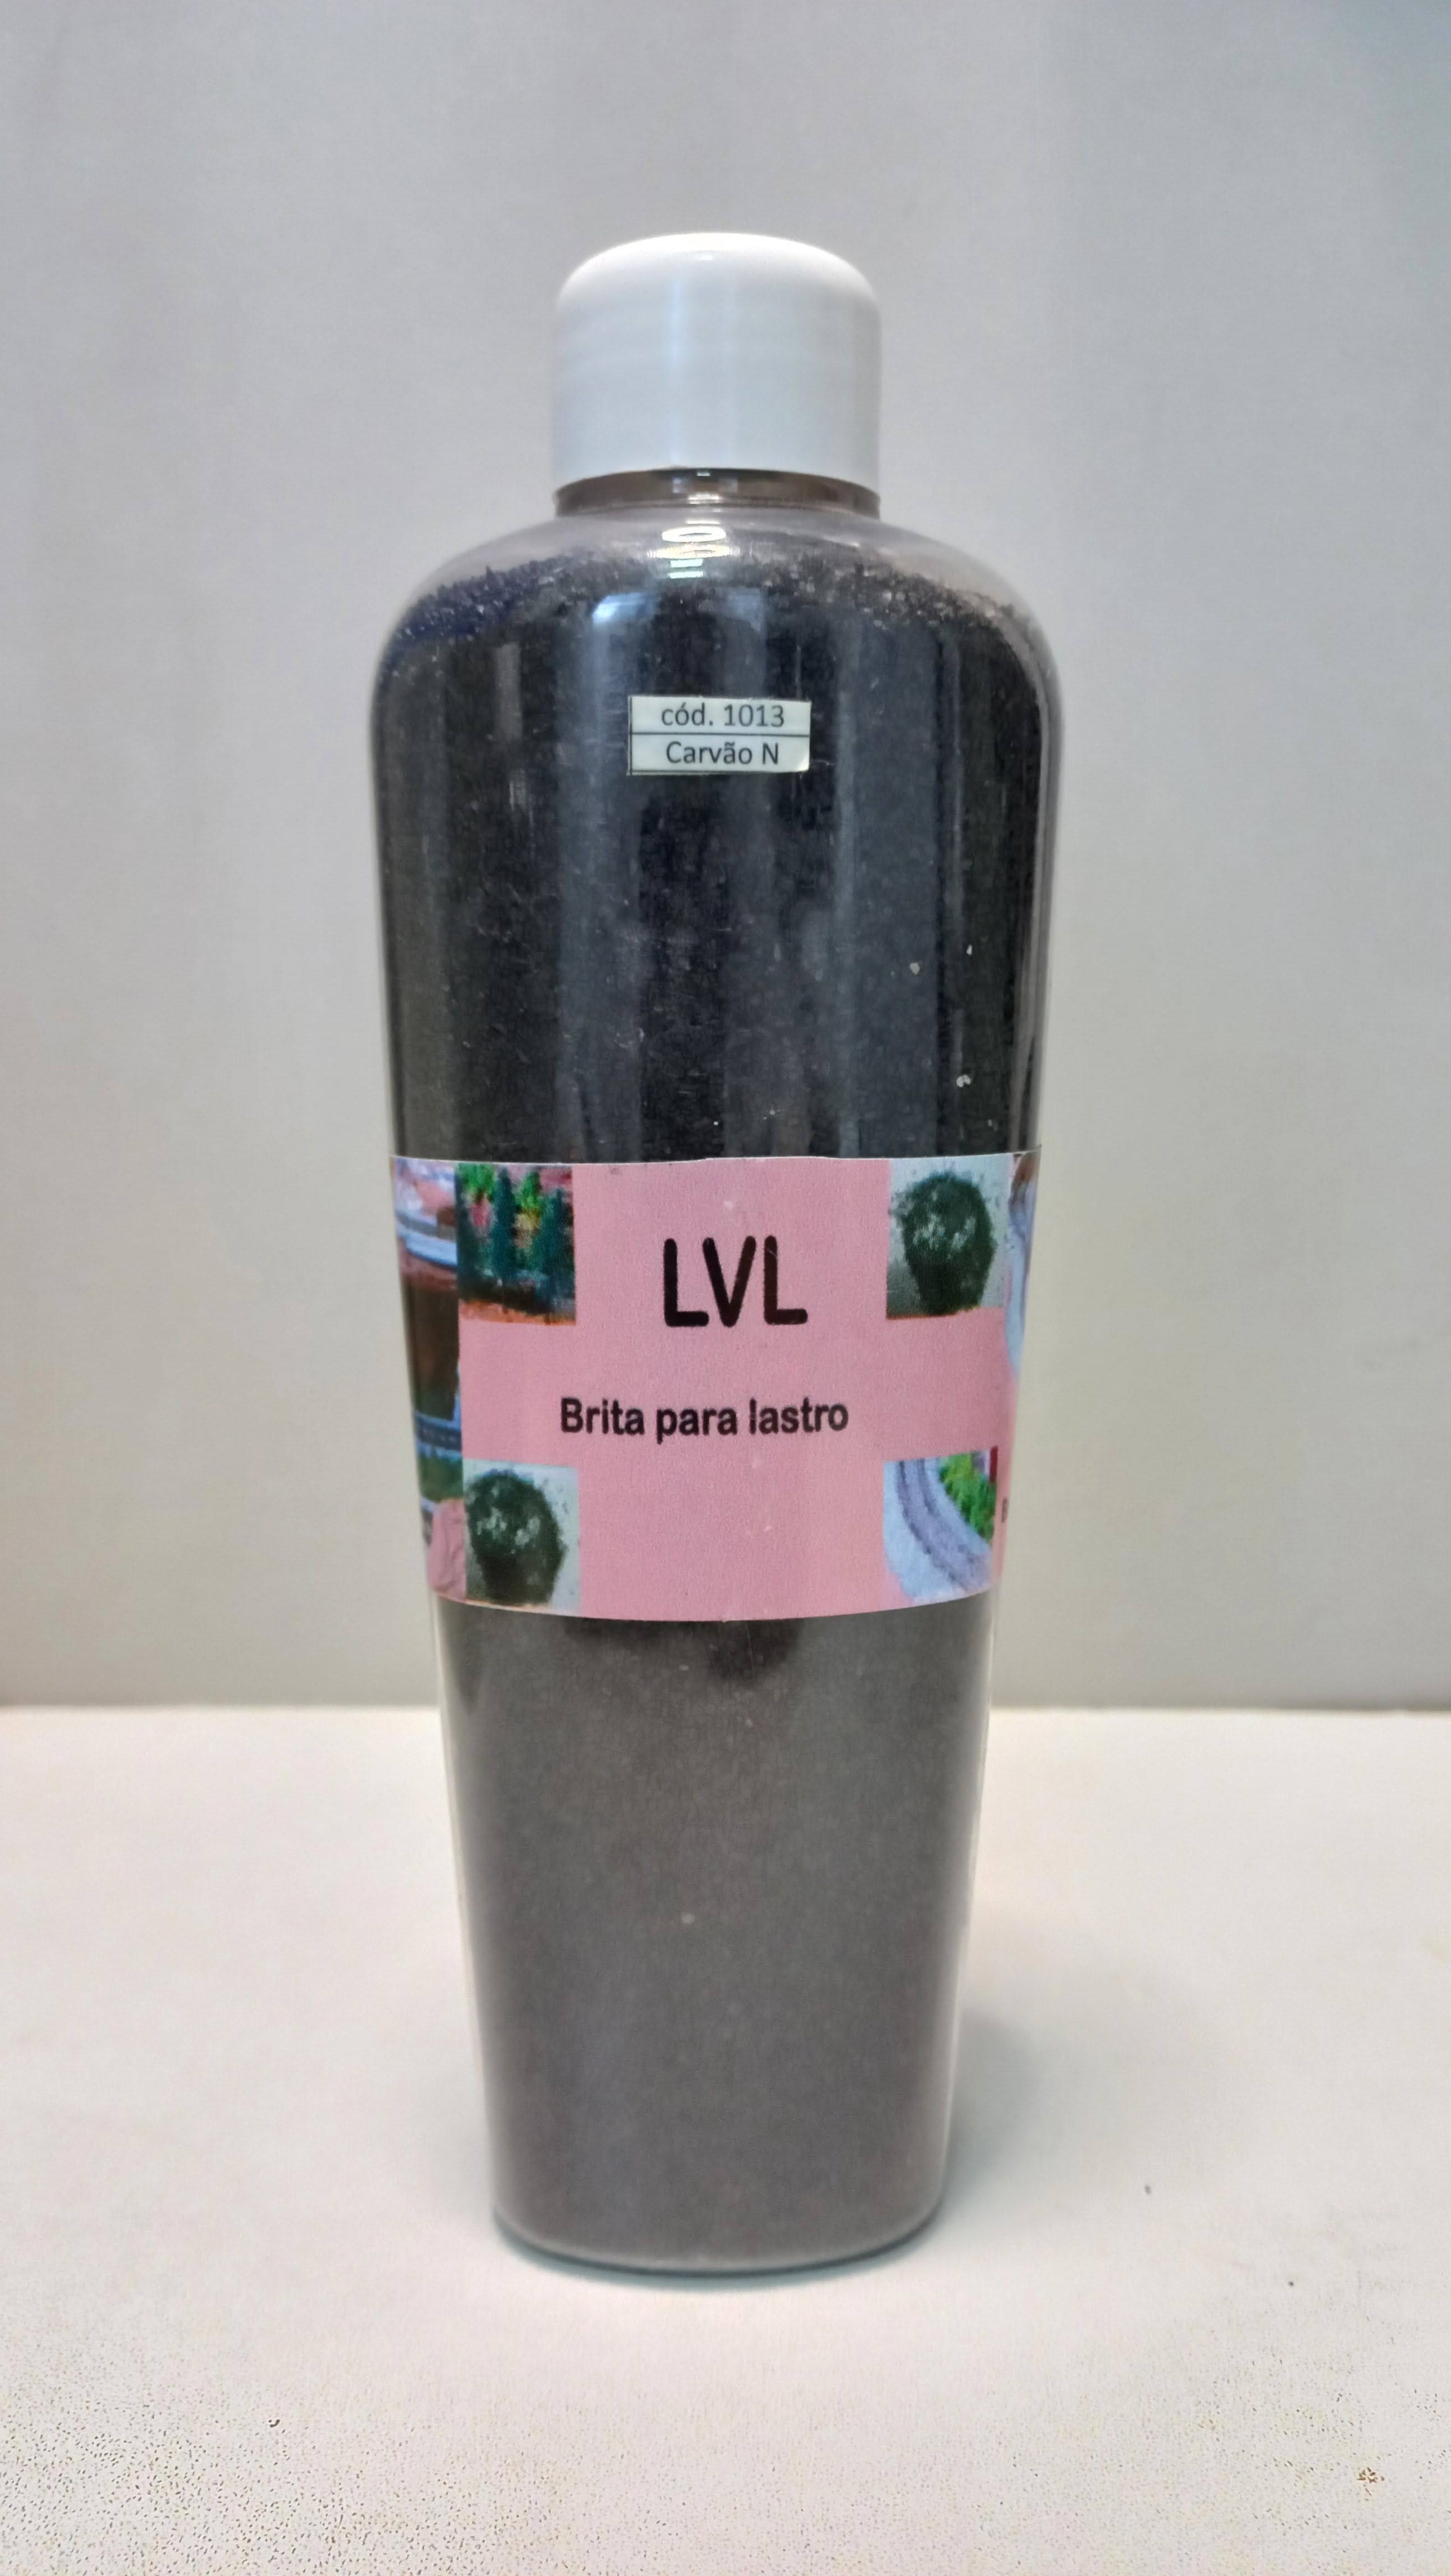 Brita para Lastro Carvão escala "N" - LVL 1013